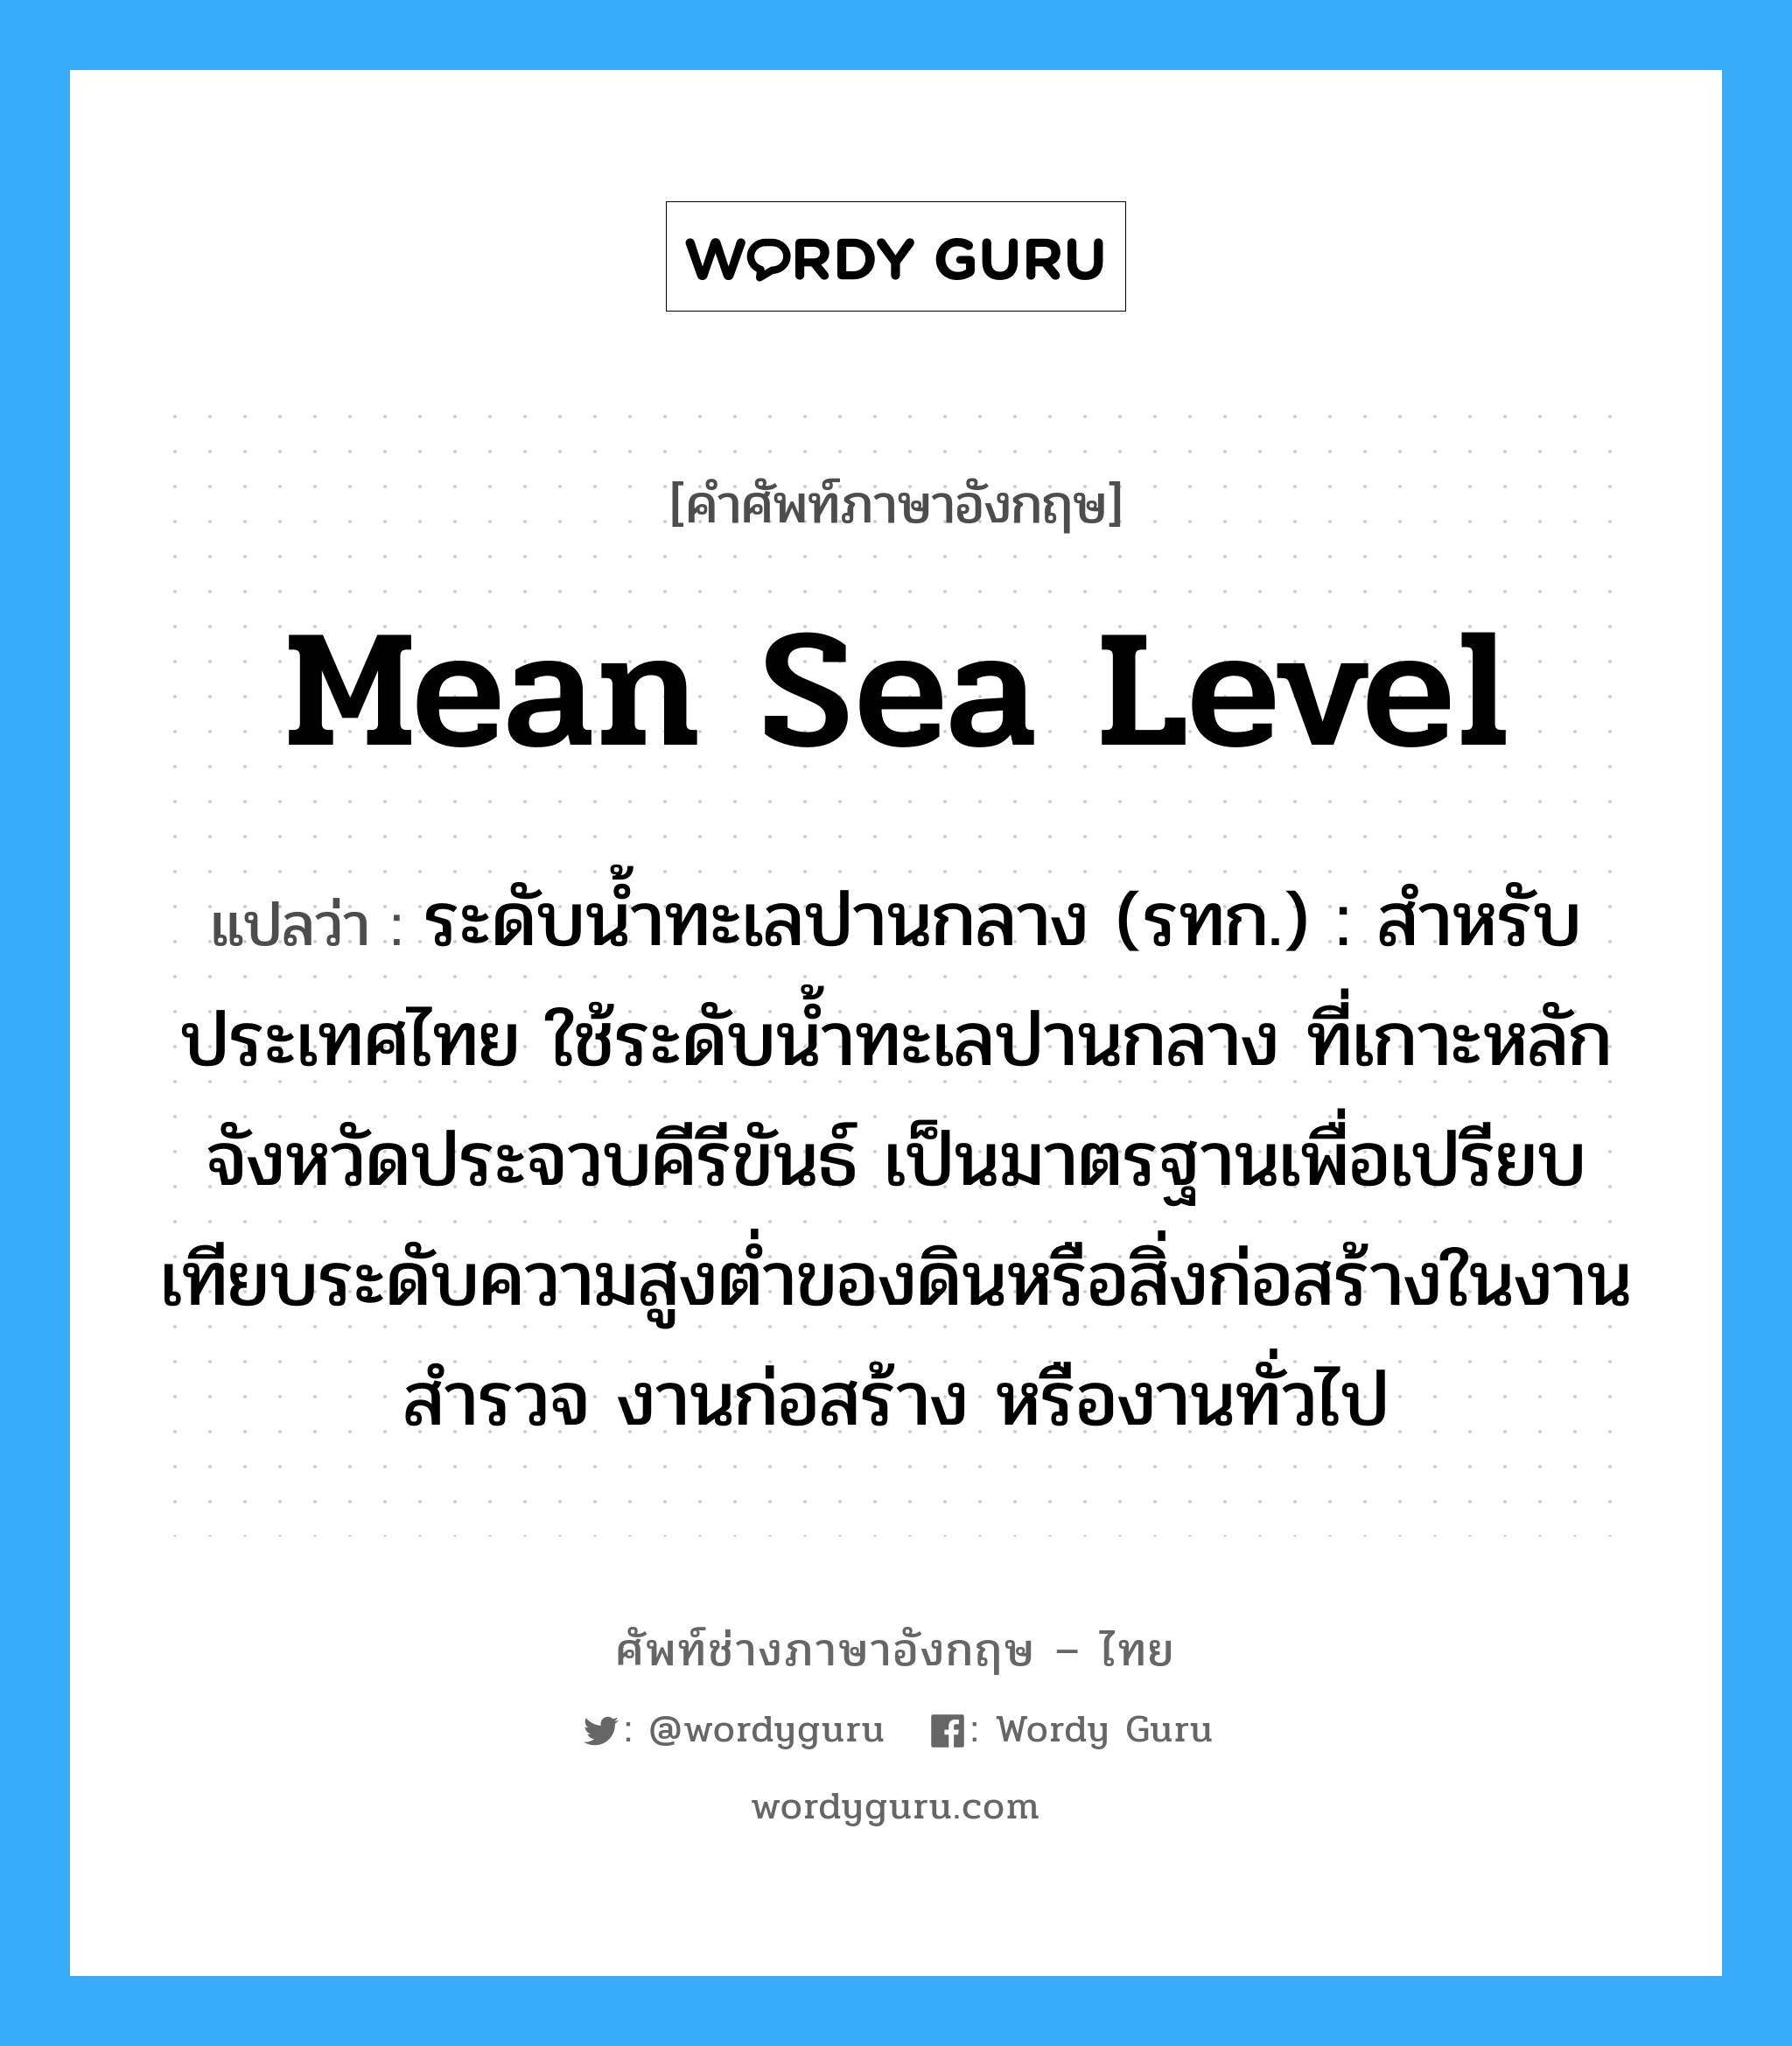 ระดับน้ำทะเลปานกลาง (รทก.) : สำหรับประเทศไทย ใช้ระดับน้ำทะเลปานกลาง ที่เกาะหลัก จังหวัดประจวบคีรีขันธ์ เป็นมาตรฐานเพื่อเปรียบเทียบระดับความสูงต่ำของดินหรือสิ่งก่อสร้างในงานสำรวจ งานก่อสร้าง หรืองานทั่วไป ภาษาอังกฤษ?, คำศัพท์ช่างภาษาอังกฤษ - ไทย ระดับน้ำทะเลปานกลาง (รทก.) : สำหรับประเทศไทย ใช้ระดับน้ำทะเลปานกลาง ที่เกาะหลัก จังหวัดประจวบคีรีขันธ์ เป็นมาตรฐานเพื่อเปรียบเทียบระดับความสูงต่ำของดินหรือสิ่งก่อสร้างในงานสำรวจ งานก่อสร้าง หรืองานทั่วไป คำศัพท์ภาษาอังกฤษ ระดับน้ำทะเลปานกลาง (รทก.) : สำหรับประเทศไทย ใช้ระดับน้ำทะเลปานกลาง ที่เกาะหลัก จังหวัดประจวบคีรีขันธ์ เป็นมาตรฐานเพื่อเปรียบเทียบระดับความสูงต่ำของดินหรือสิ่งก่อสร้างในงานสำรวจ งานก่อสร้าง หรืองานทั่วไป แปลว่า mean sea level